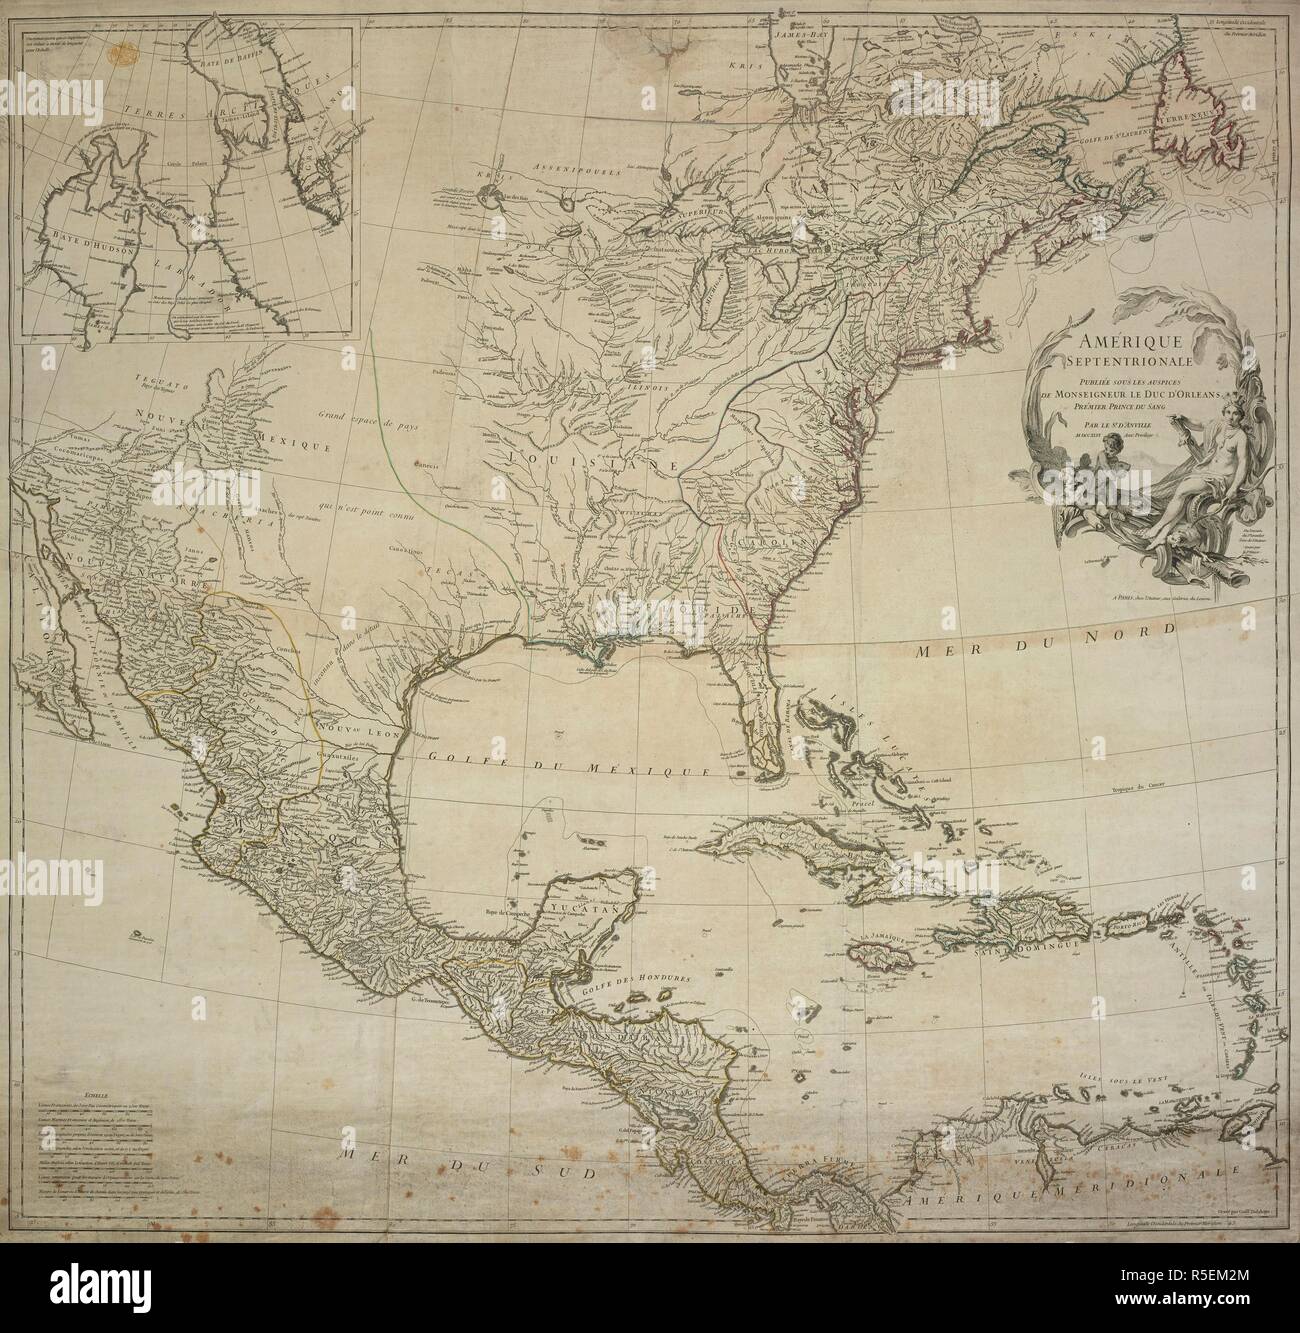 A map of North America. A map of Hudson Bay and Baffin's Bay inset at upper left. AMÃ‰RIQUE SEPTENTRIONALE : PUBLIÃ‰E SOUS LES AUSPICES DE MONSEIGNEUR LE DUC D'ORLEANS PRÃ‰MIER PRINCE DU SANG. A PARIS : chez l'Auteur, aux Galeries du Louvre, [1746.]. Source: Maps K.Top.118.29.2 TAB. Language: French. Author: D'ANVILLE. Stock Photo